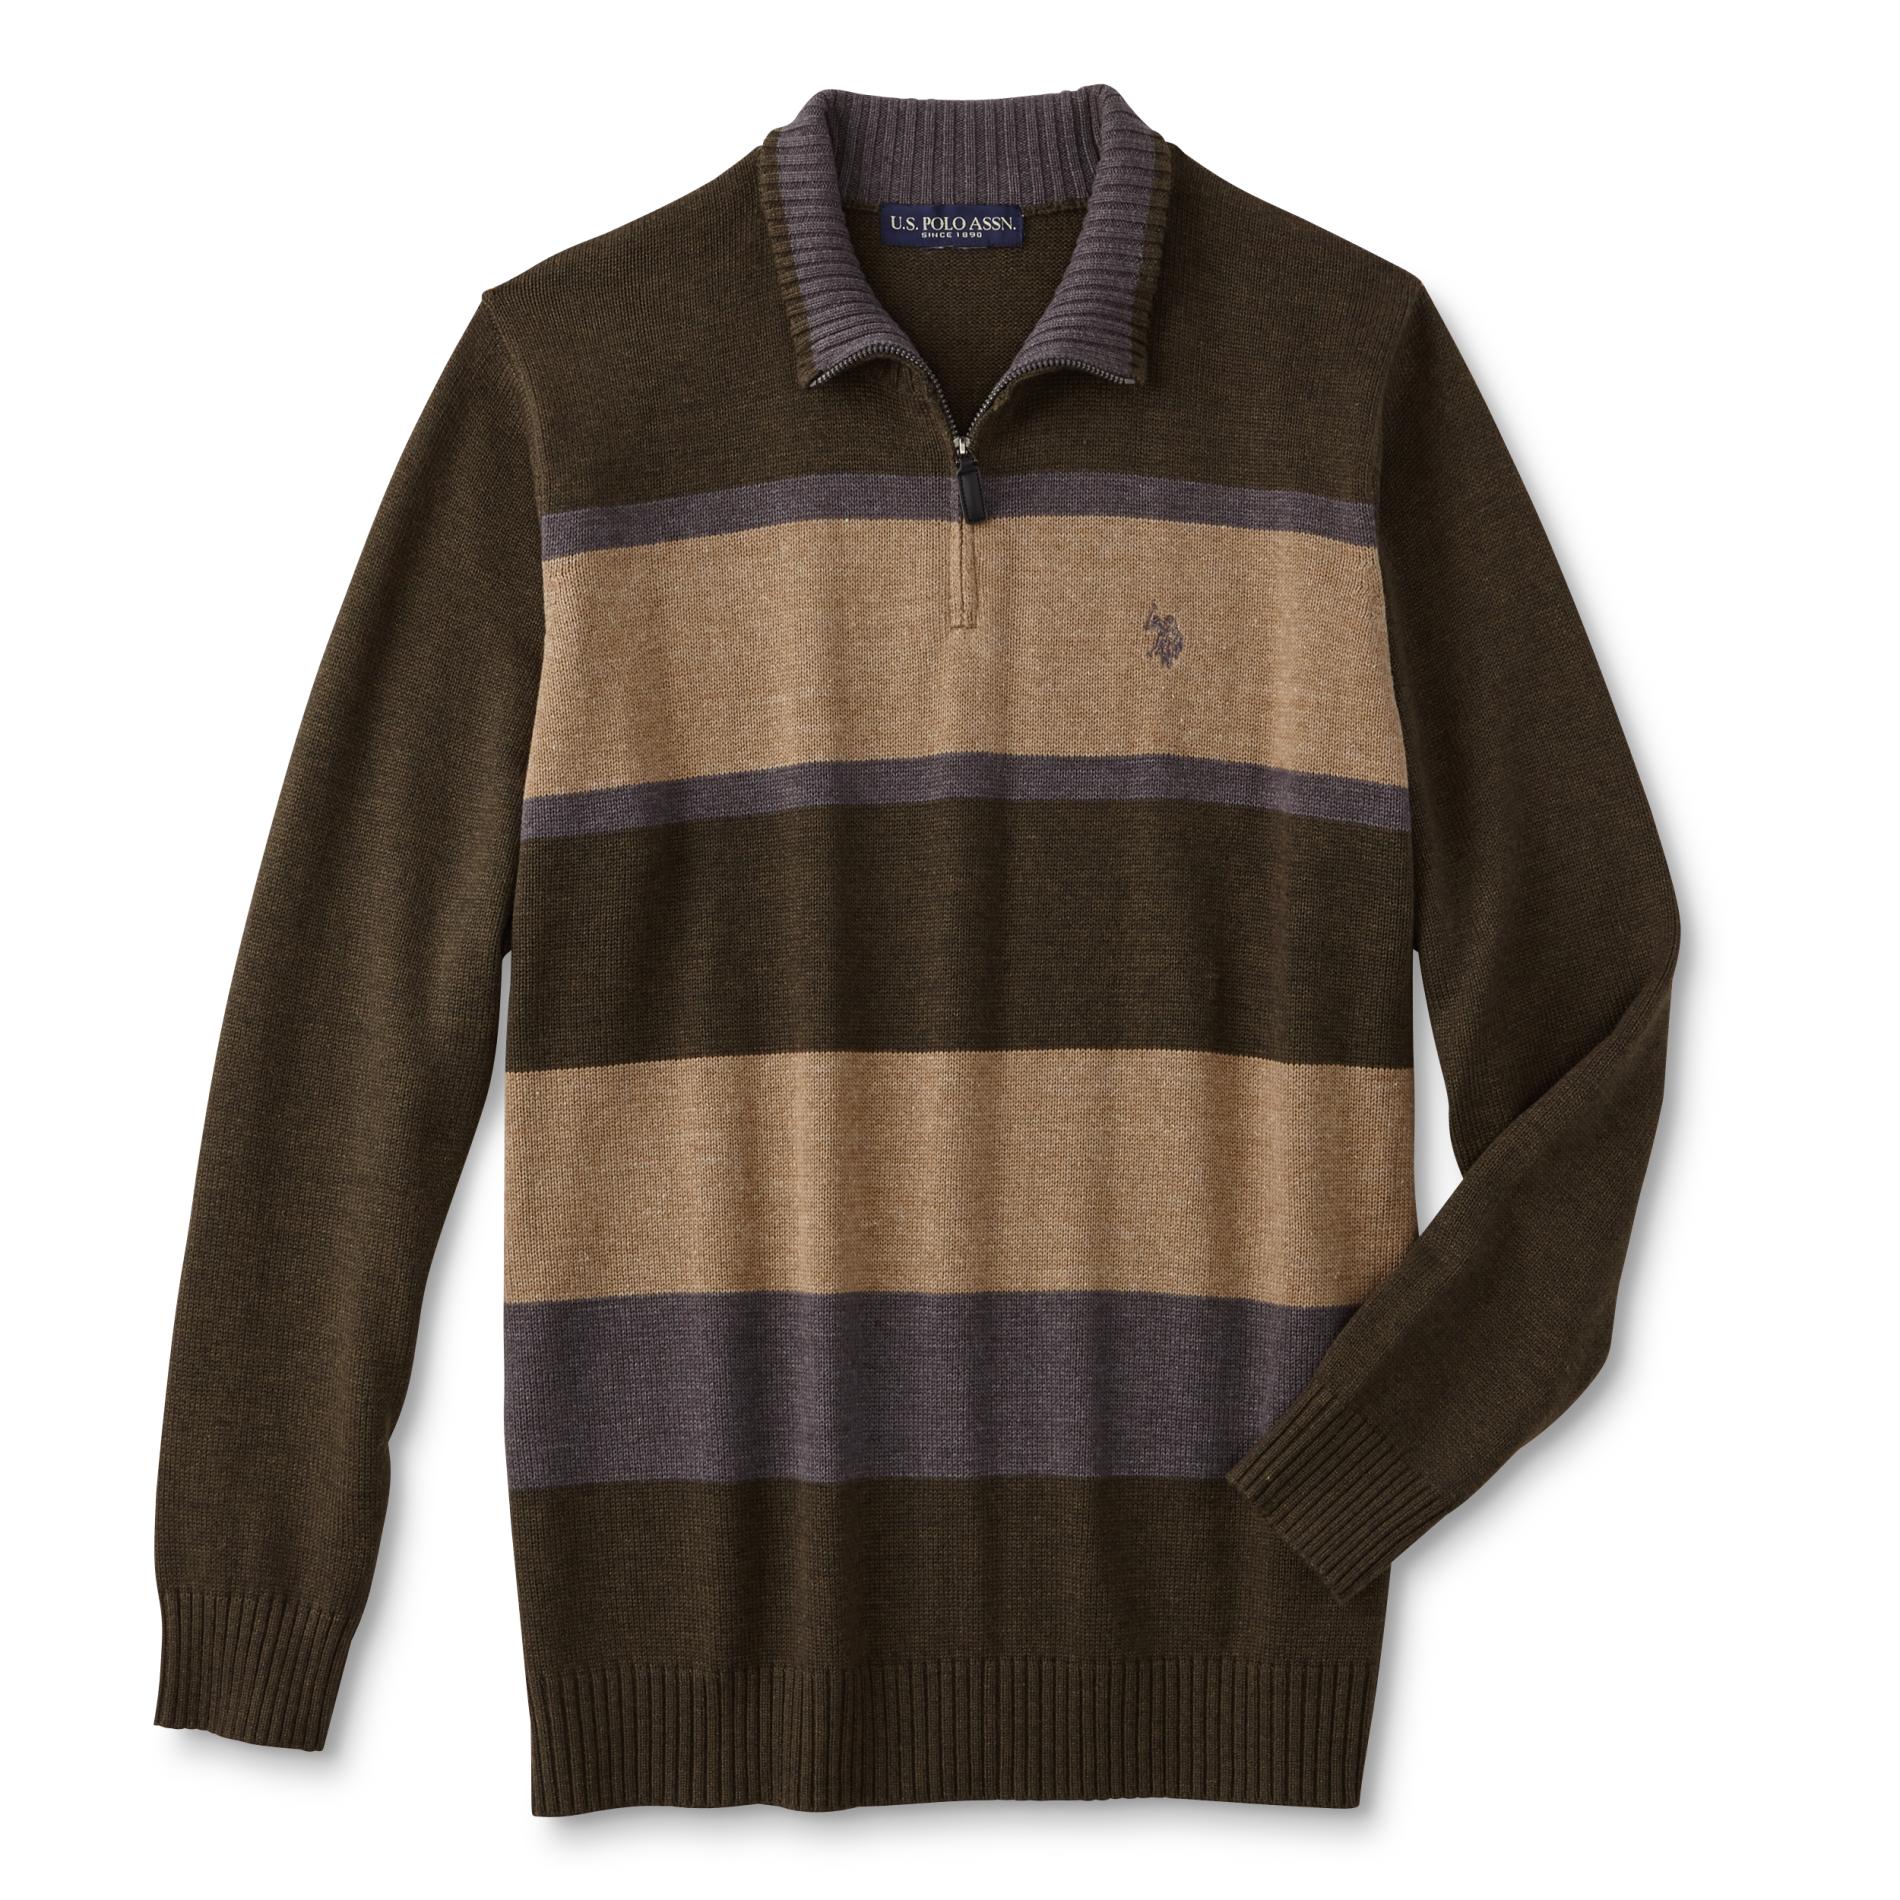 U.S. Polo Assn. Men's Quarter-Zip Sweater - Striped